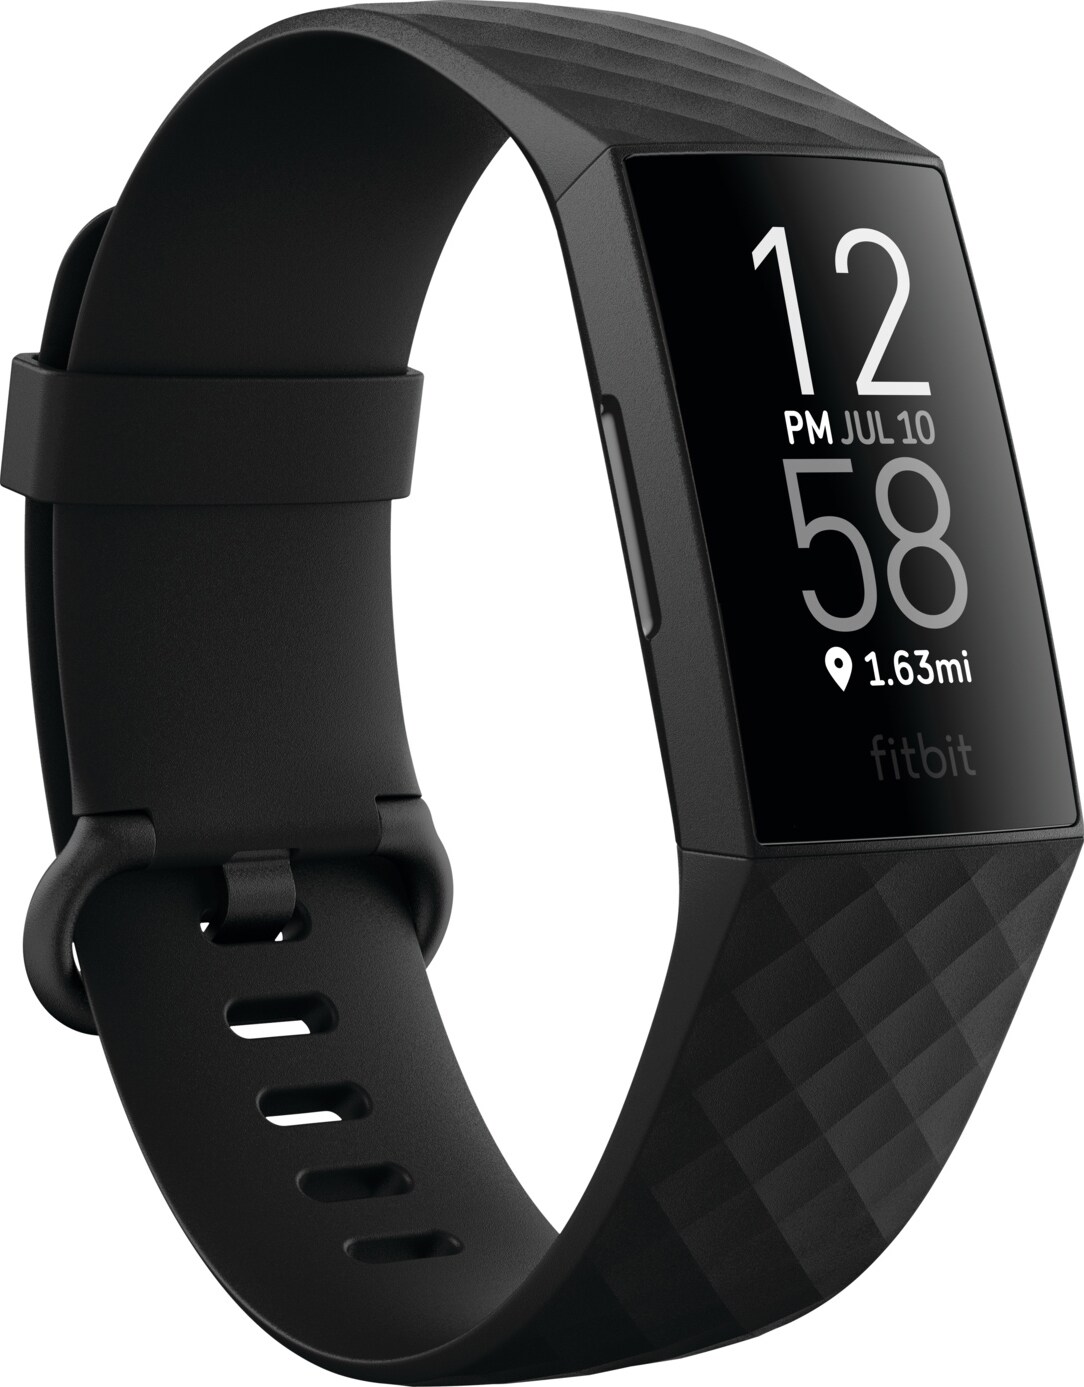 Fitbit - smartwatch, aktivitetsarmband, sportklocka och pulsklocka -  Elgiganten